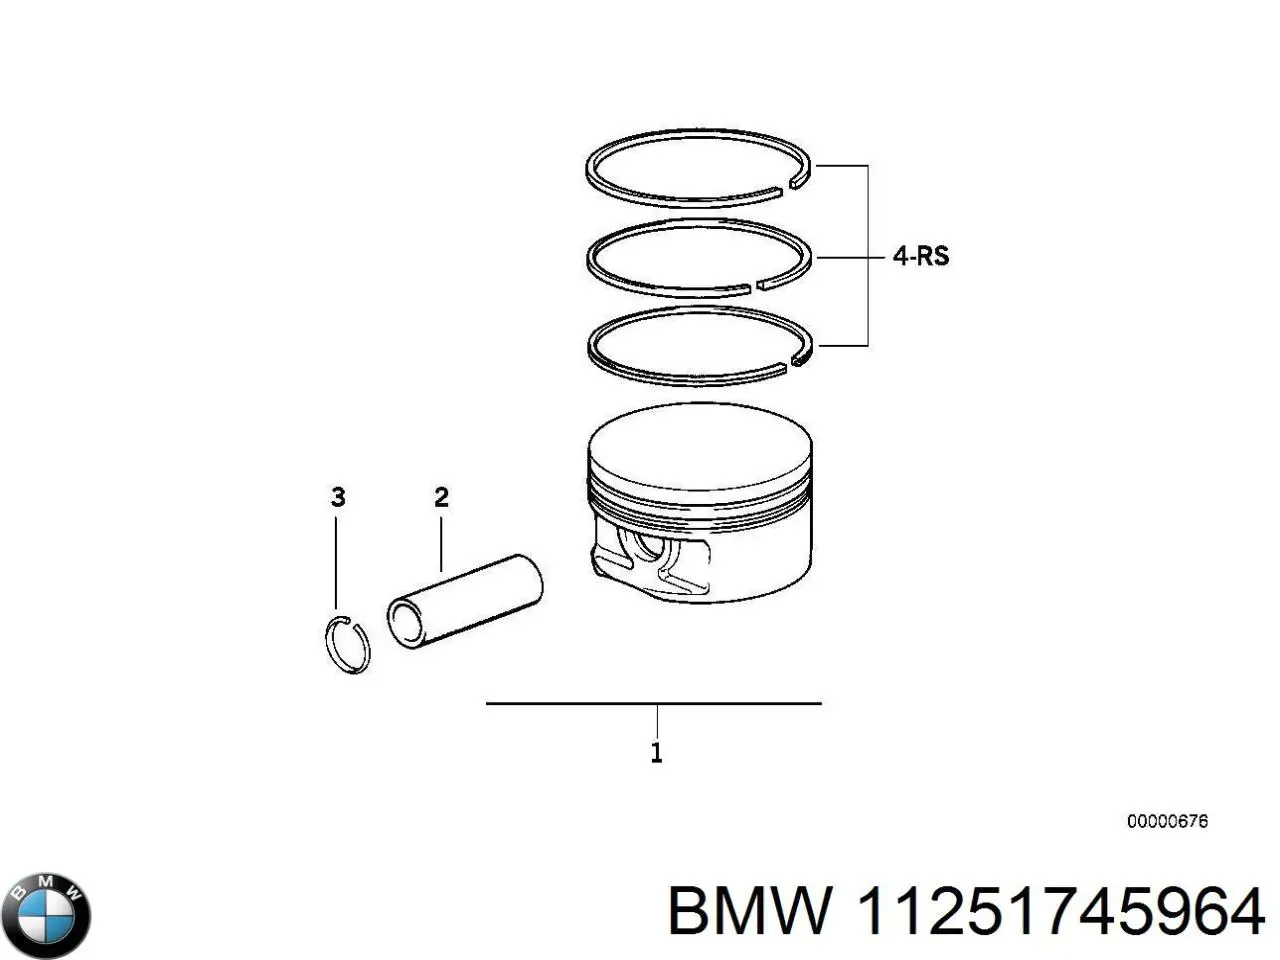 Кольца поршневые на 1 цилиндр, 2-й ремонт (+0,50) на BMW 7 (E32) купить.